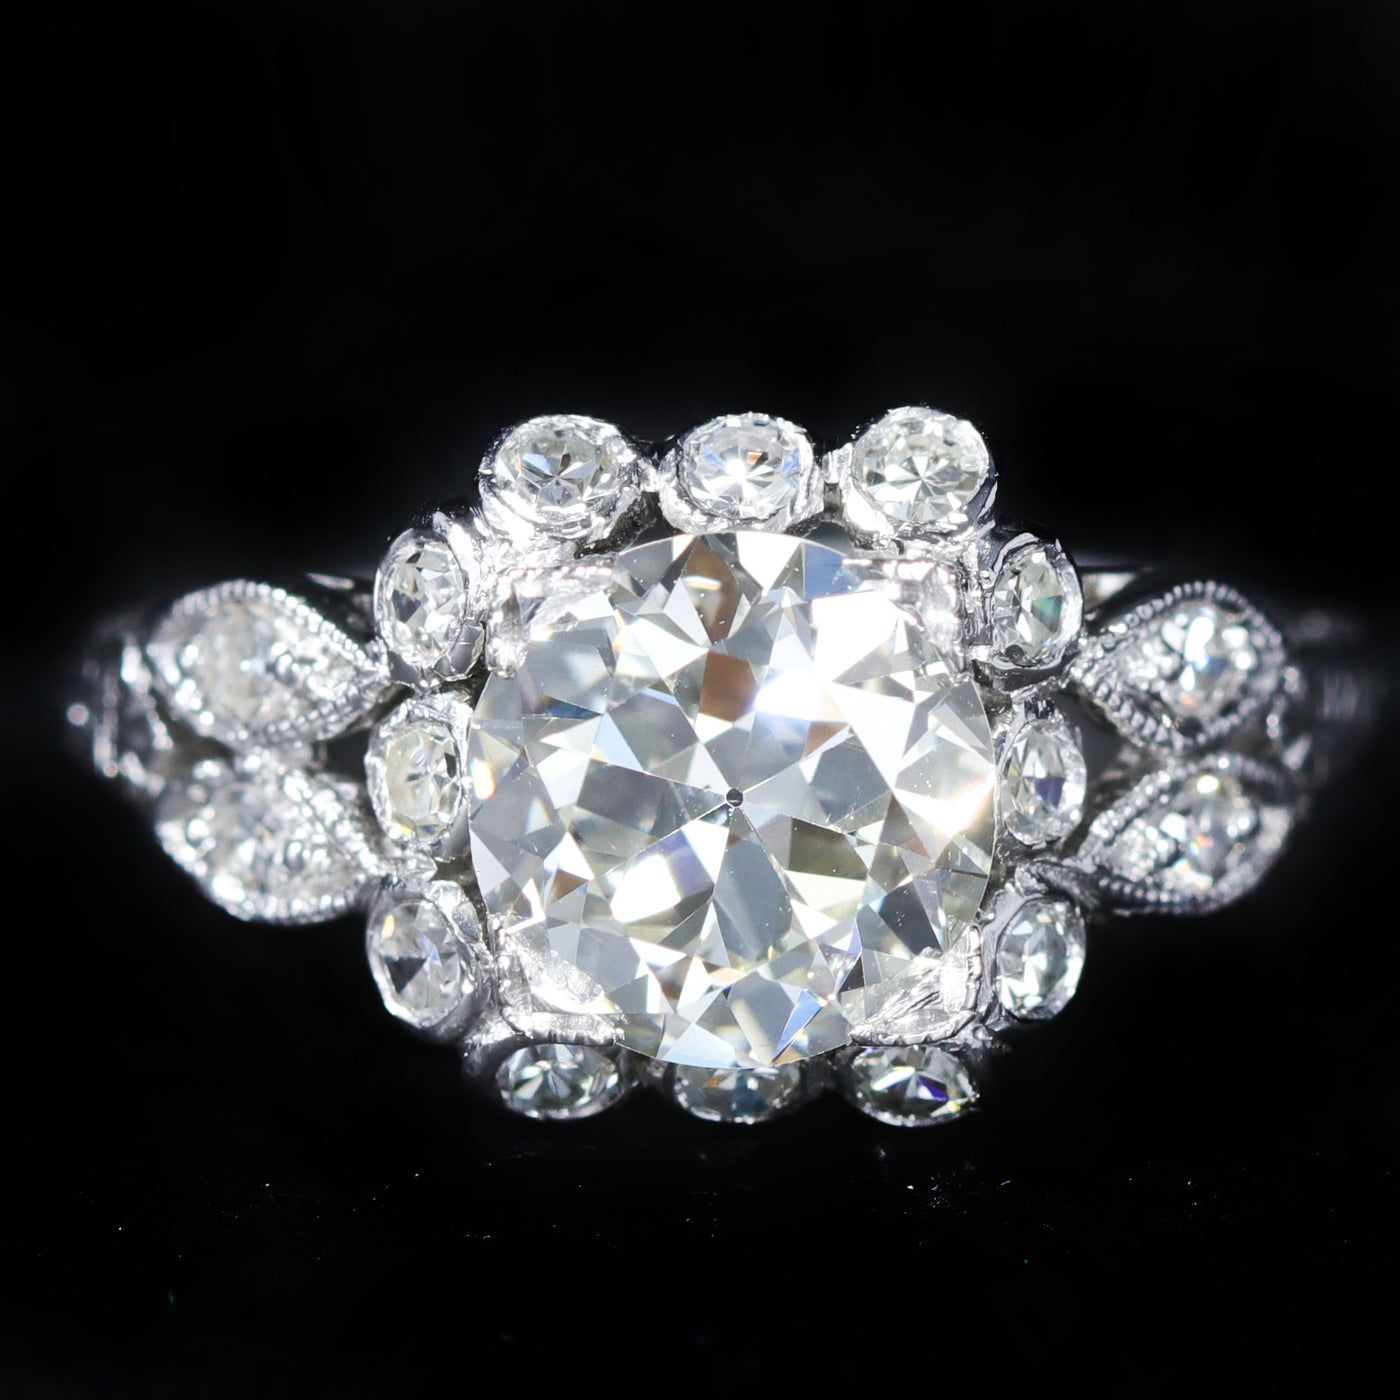 Art Deco Platinum 1.68 Carat Old European Cut Diamond Engagement Ring